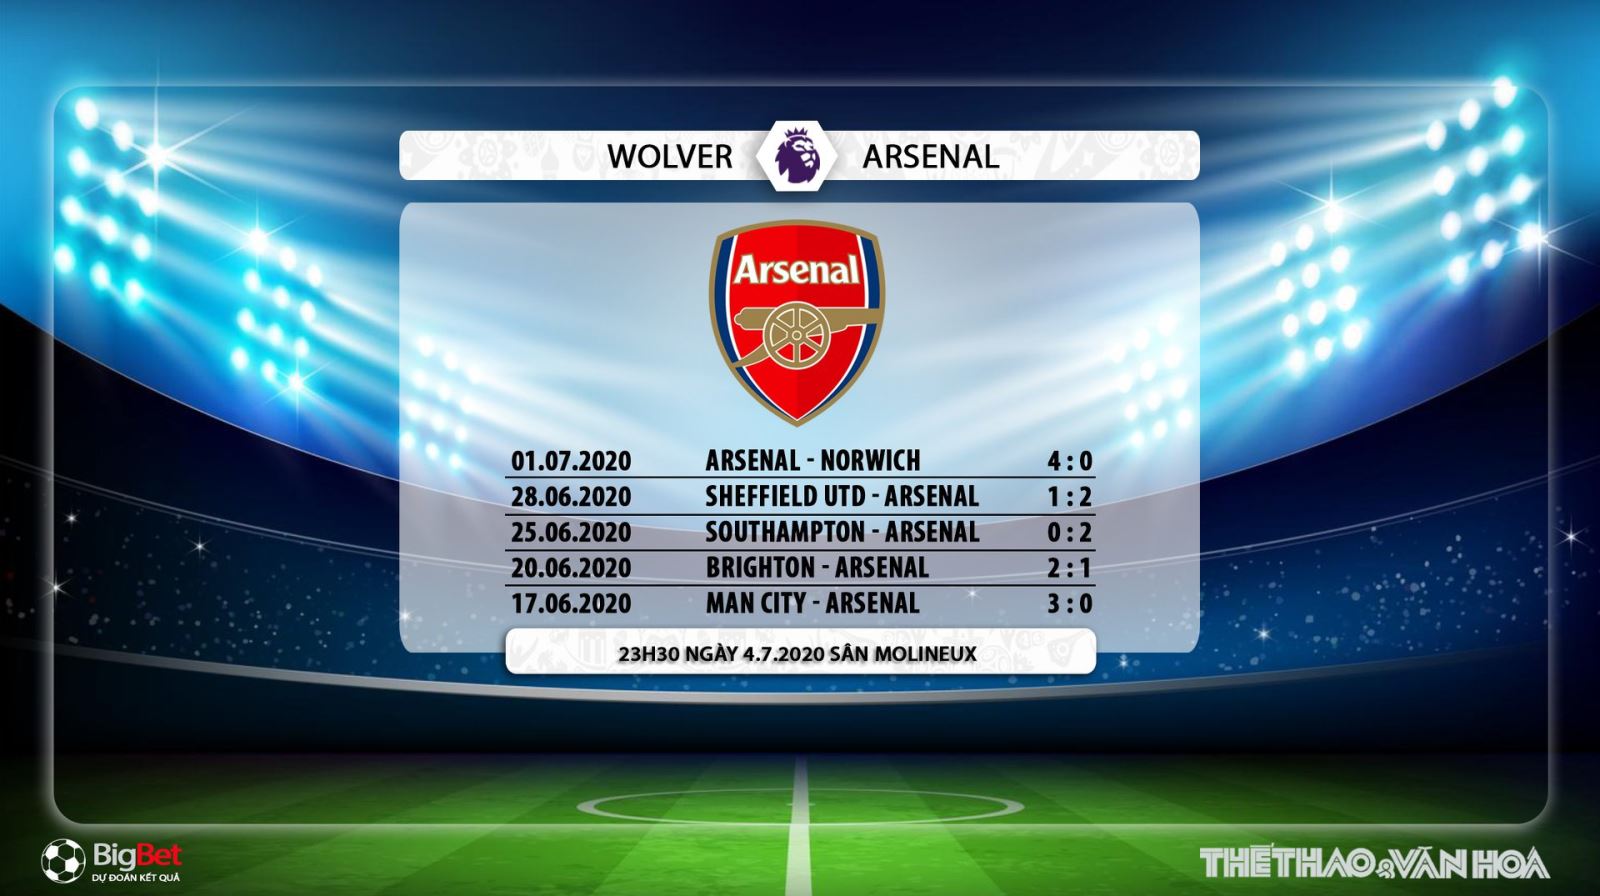 Wolves vs Arsenal, trực tiếp bóng đá, trực tiếp Wolves vs Arsenal, Arsenal, Wolves, lịch thi đấu bóng đá, bóng đá, nhận định bóng đá, kèo bóng đá